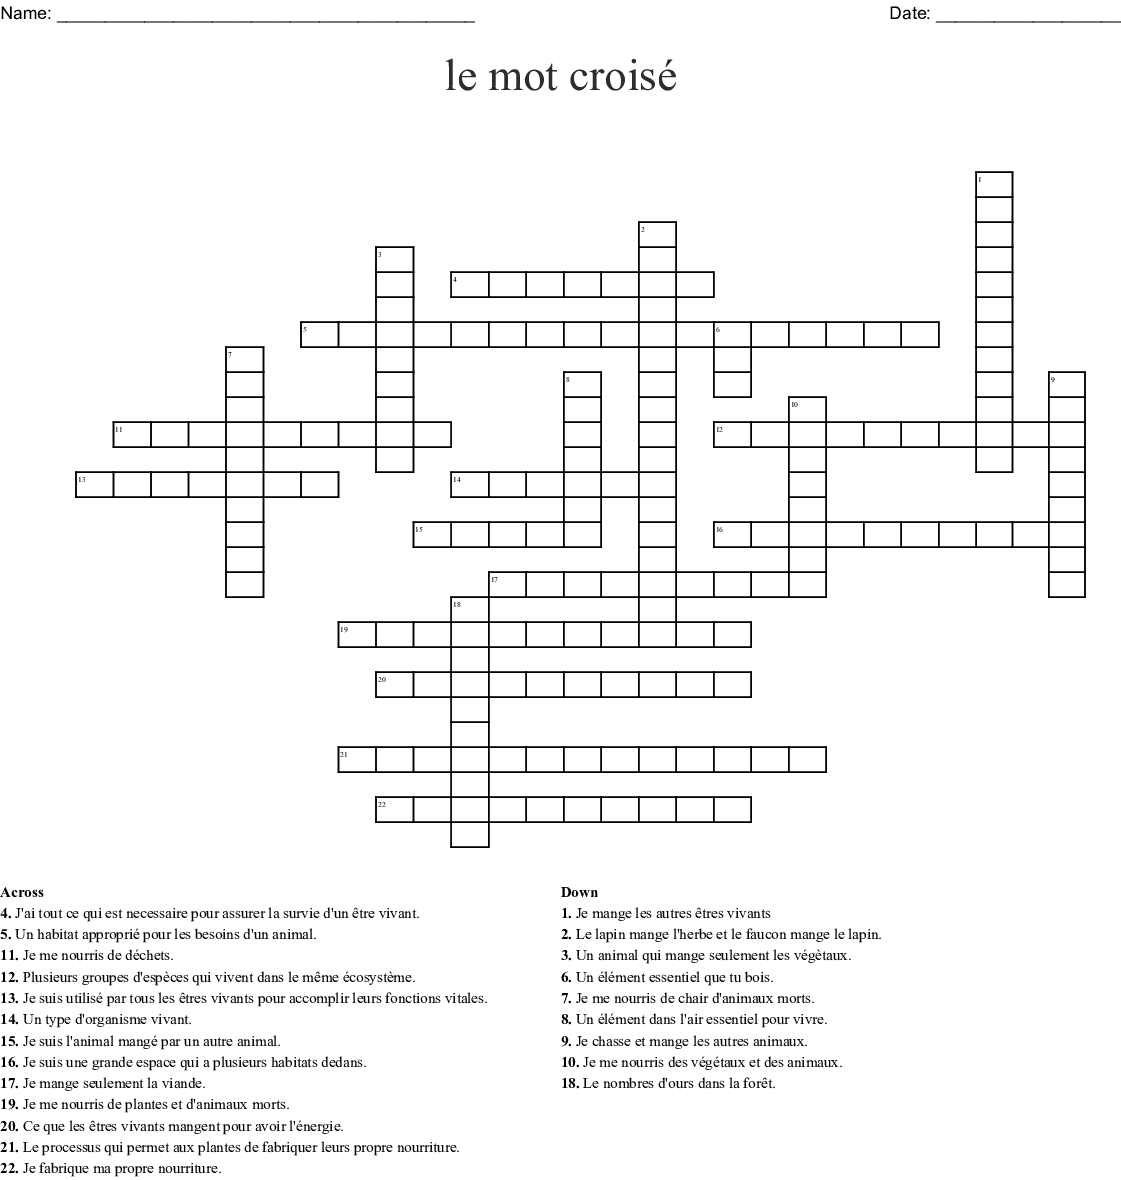 Le Mot Croisé Crossword - Wordmint destiné Mot Croiser